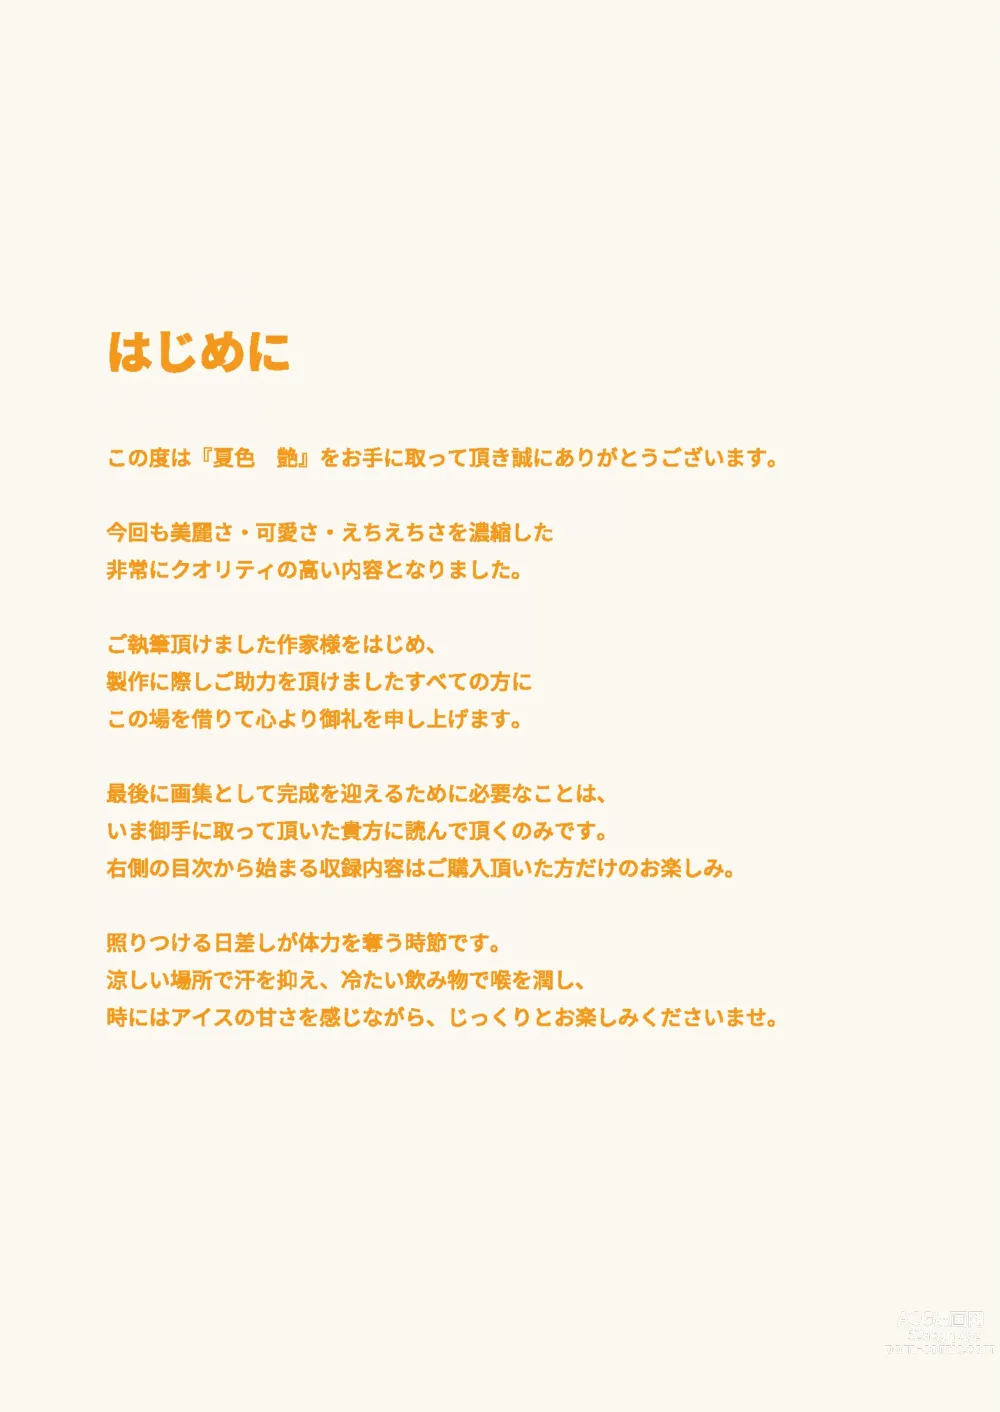 Page 3 of manga Girls Collection 2021 Summer - Natsuiro Tsuya